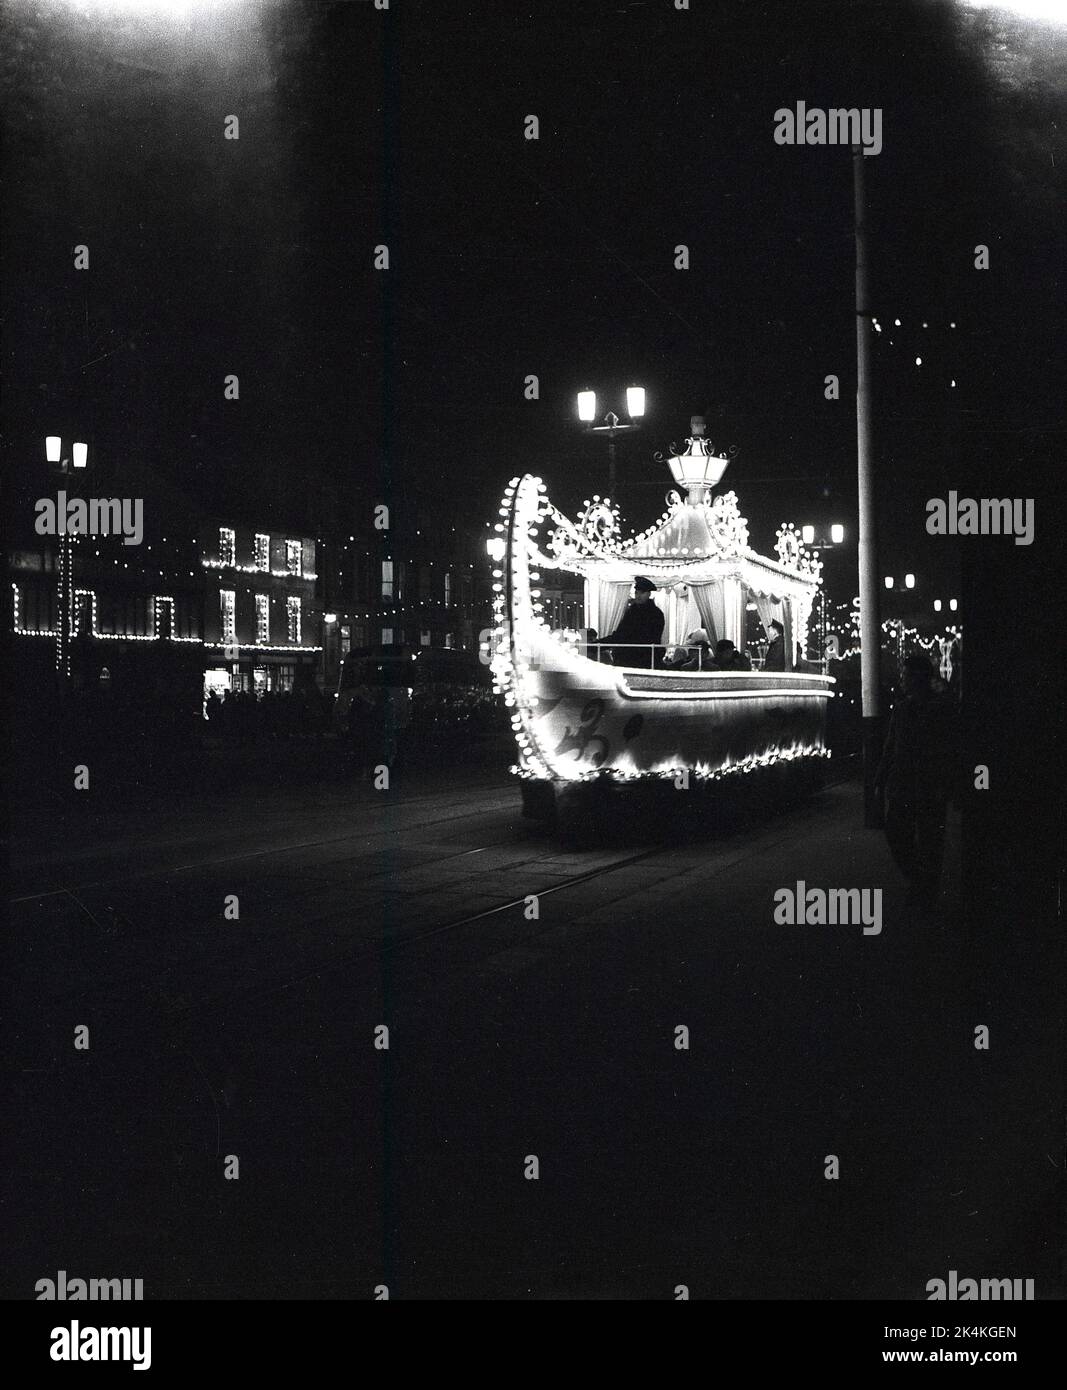 1955, Historical, Eveningtime et Blackpool Illuminations, un tramway décoré illuminé dans la station balnéaire du nord de Blackpool, Angleterre, Royaume-Uni. Banque D'Images